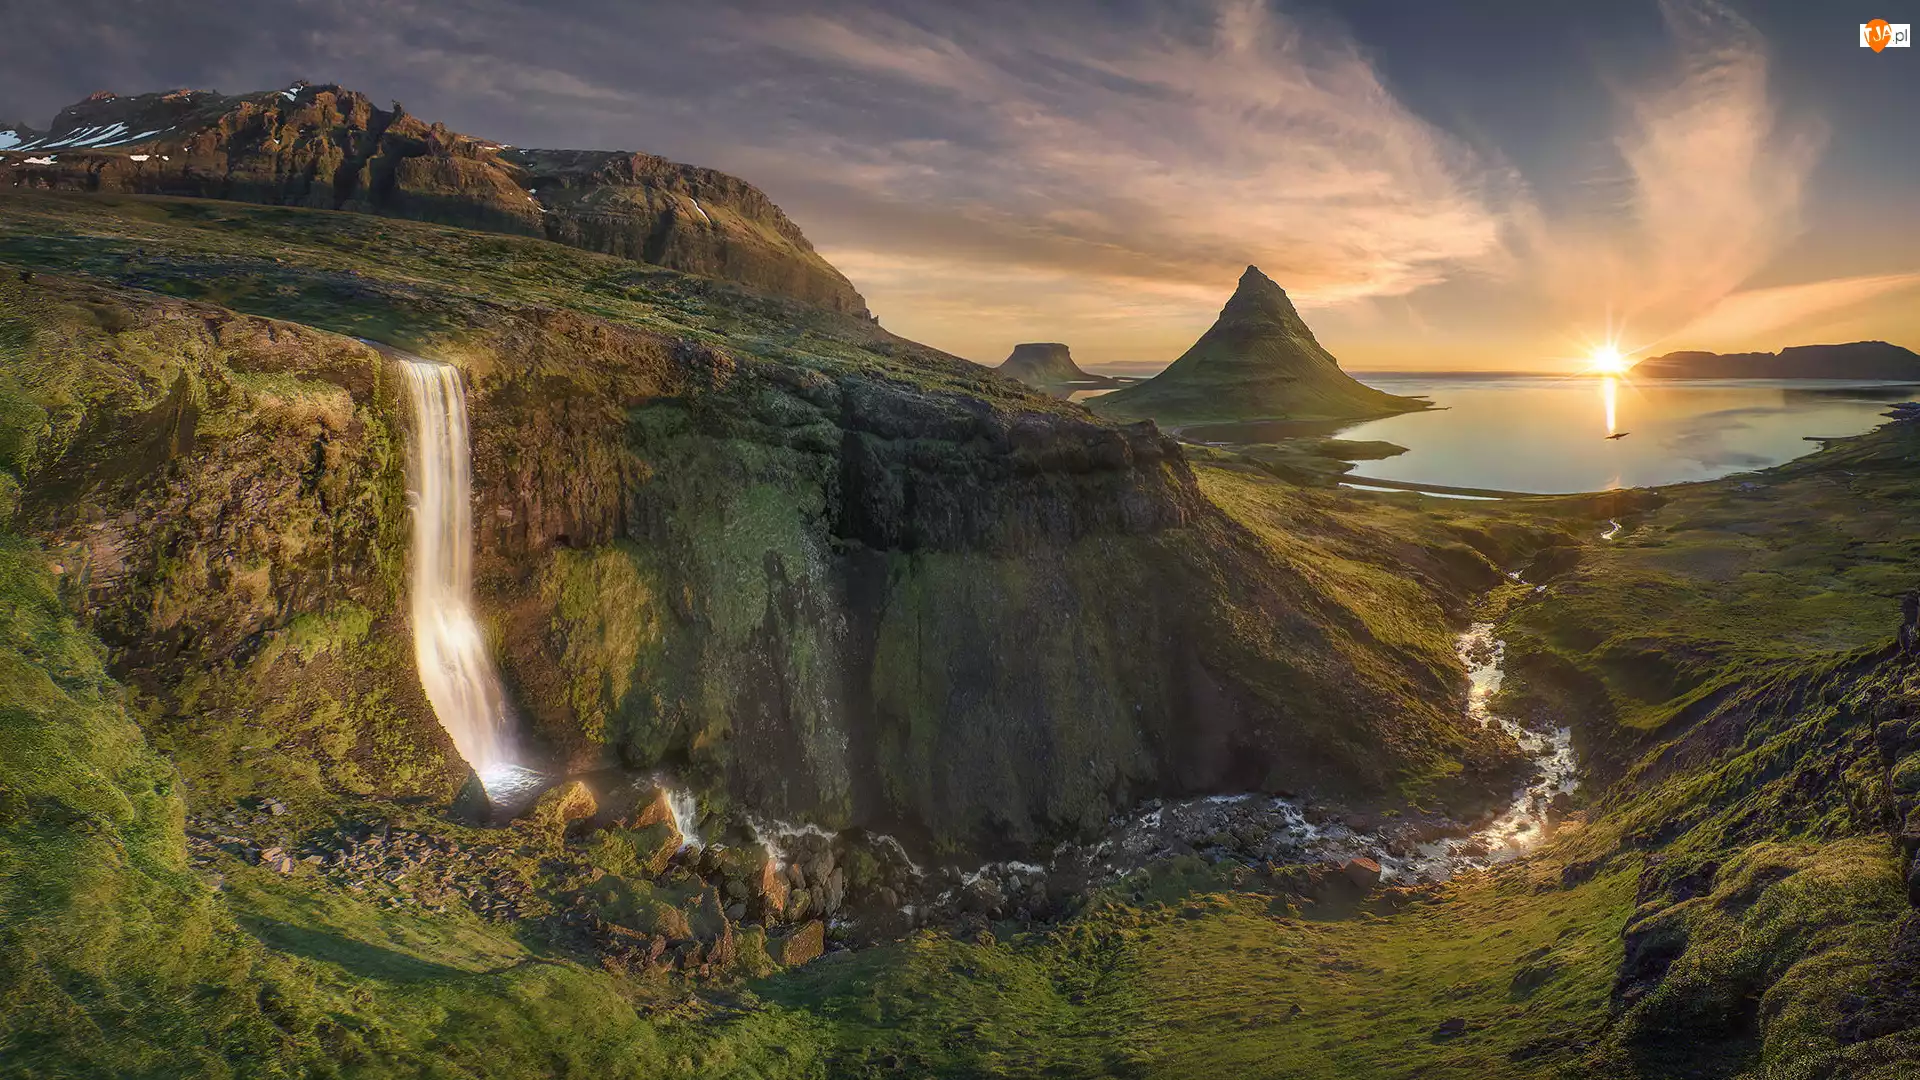 Rzeka, Góra Kirkjufell, Islandia, Wodospad, Półwysep Snafellsnes, Promienie słońca, Chmury